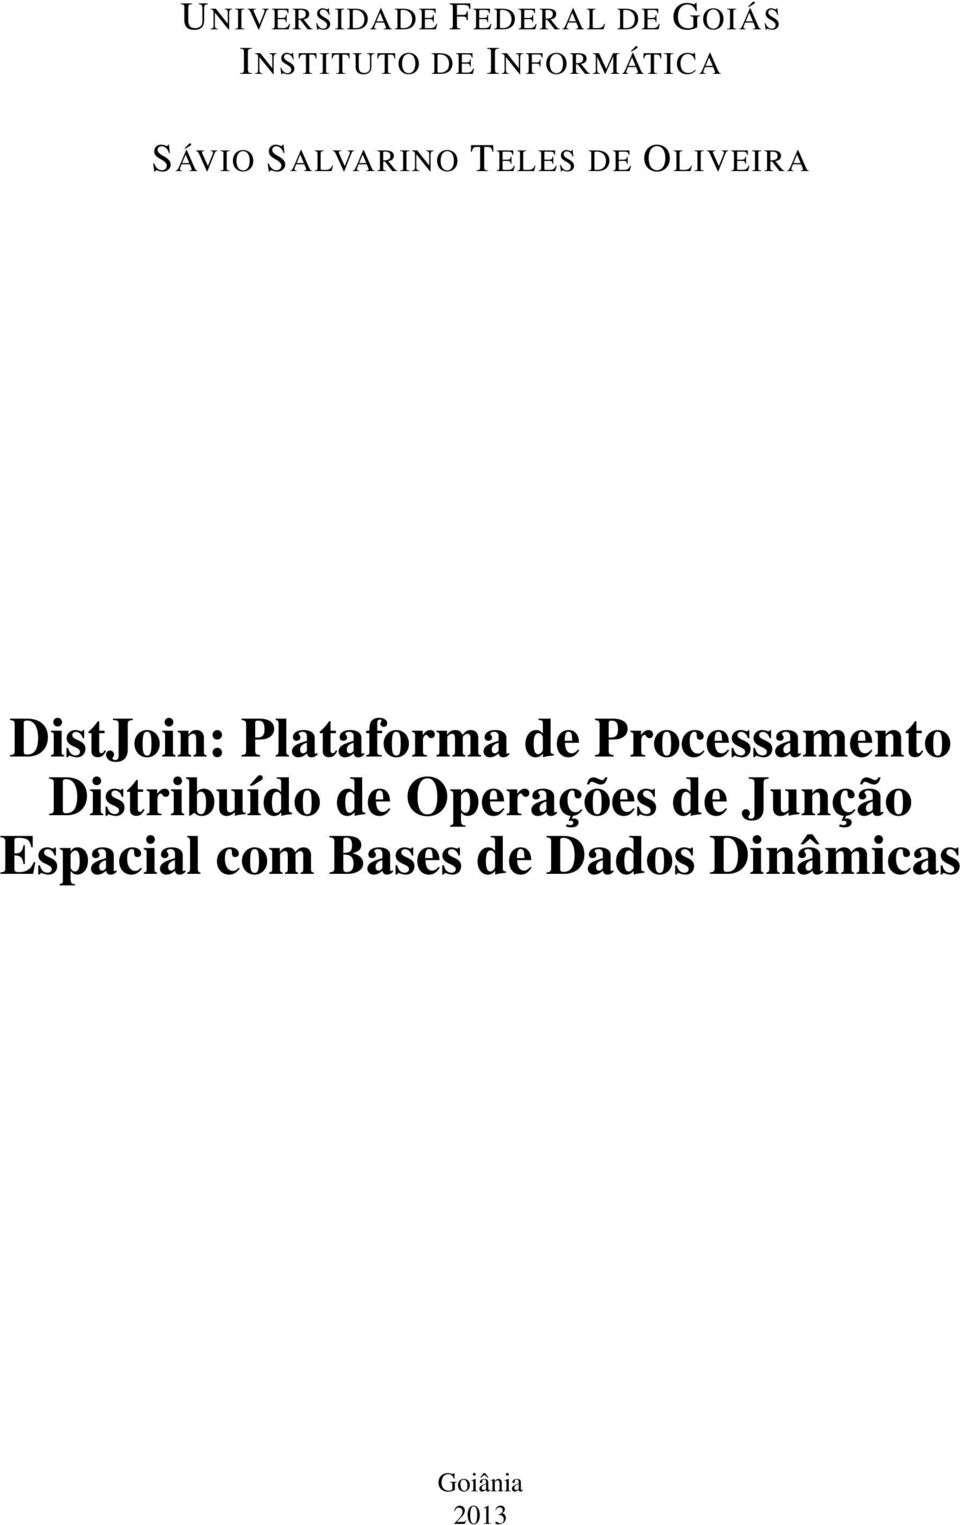 DistJoin: Plataforma de Processamento Distribuído de